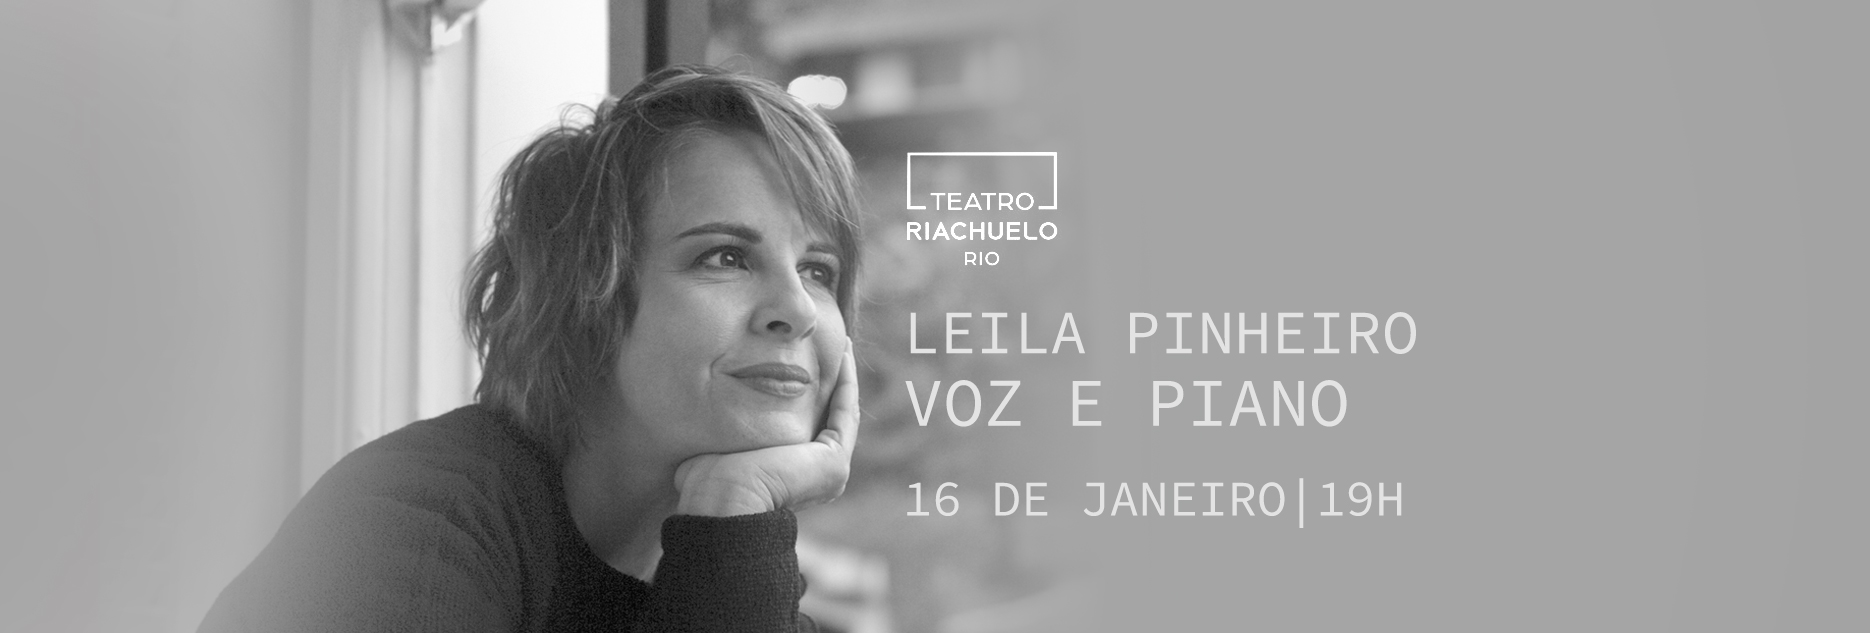 Leila Pinheiro celebra um ano de “Música das 7”, no Riachuelo